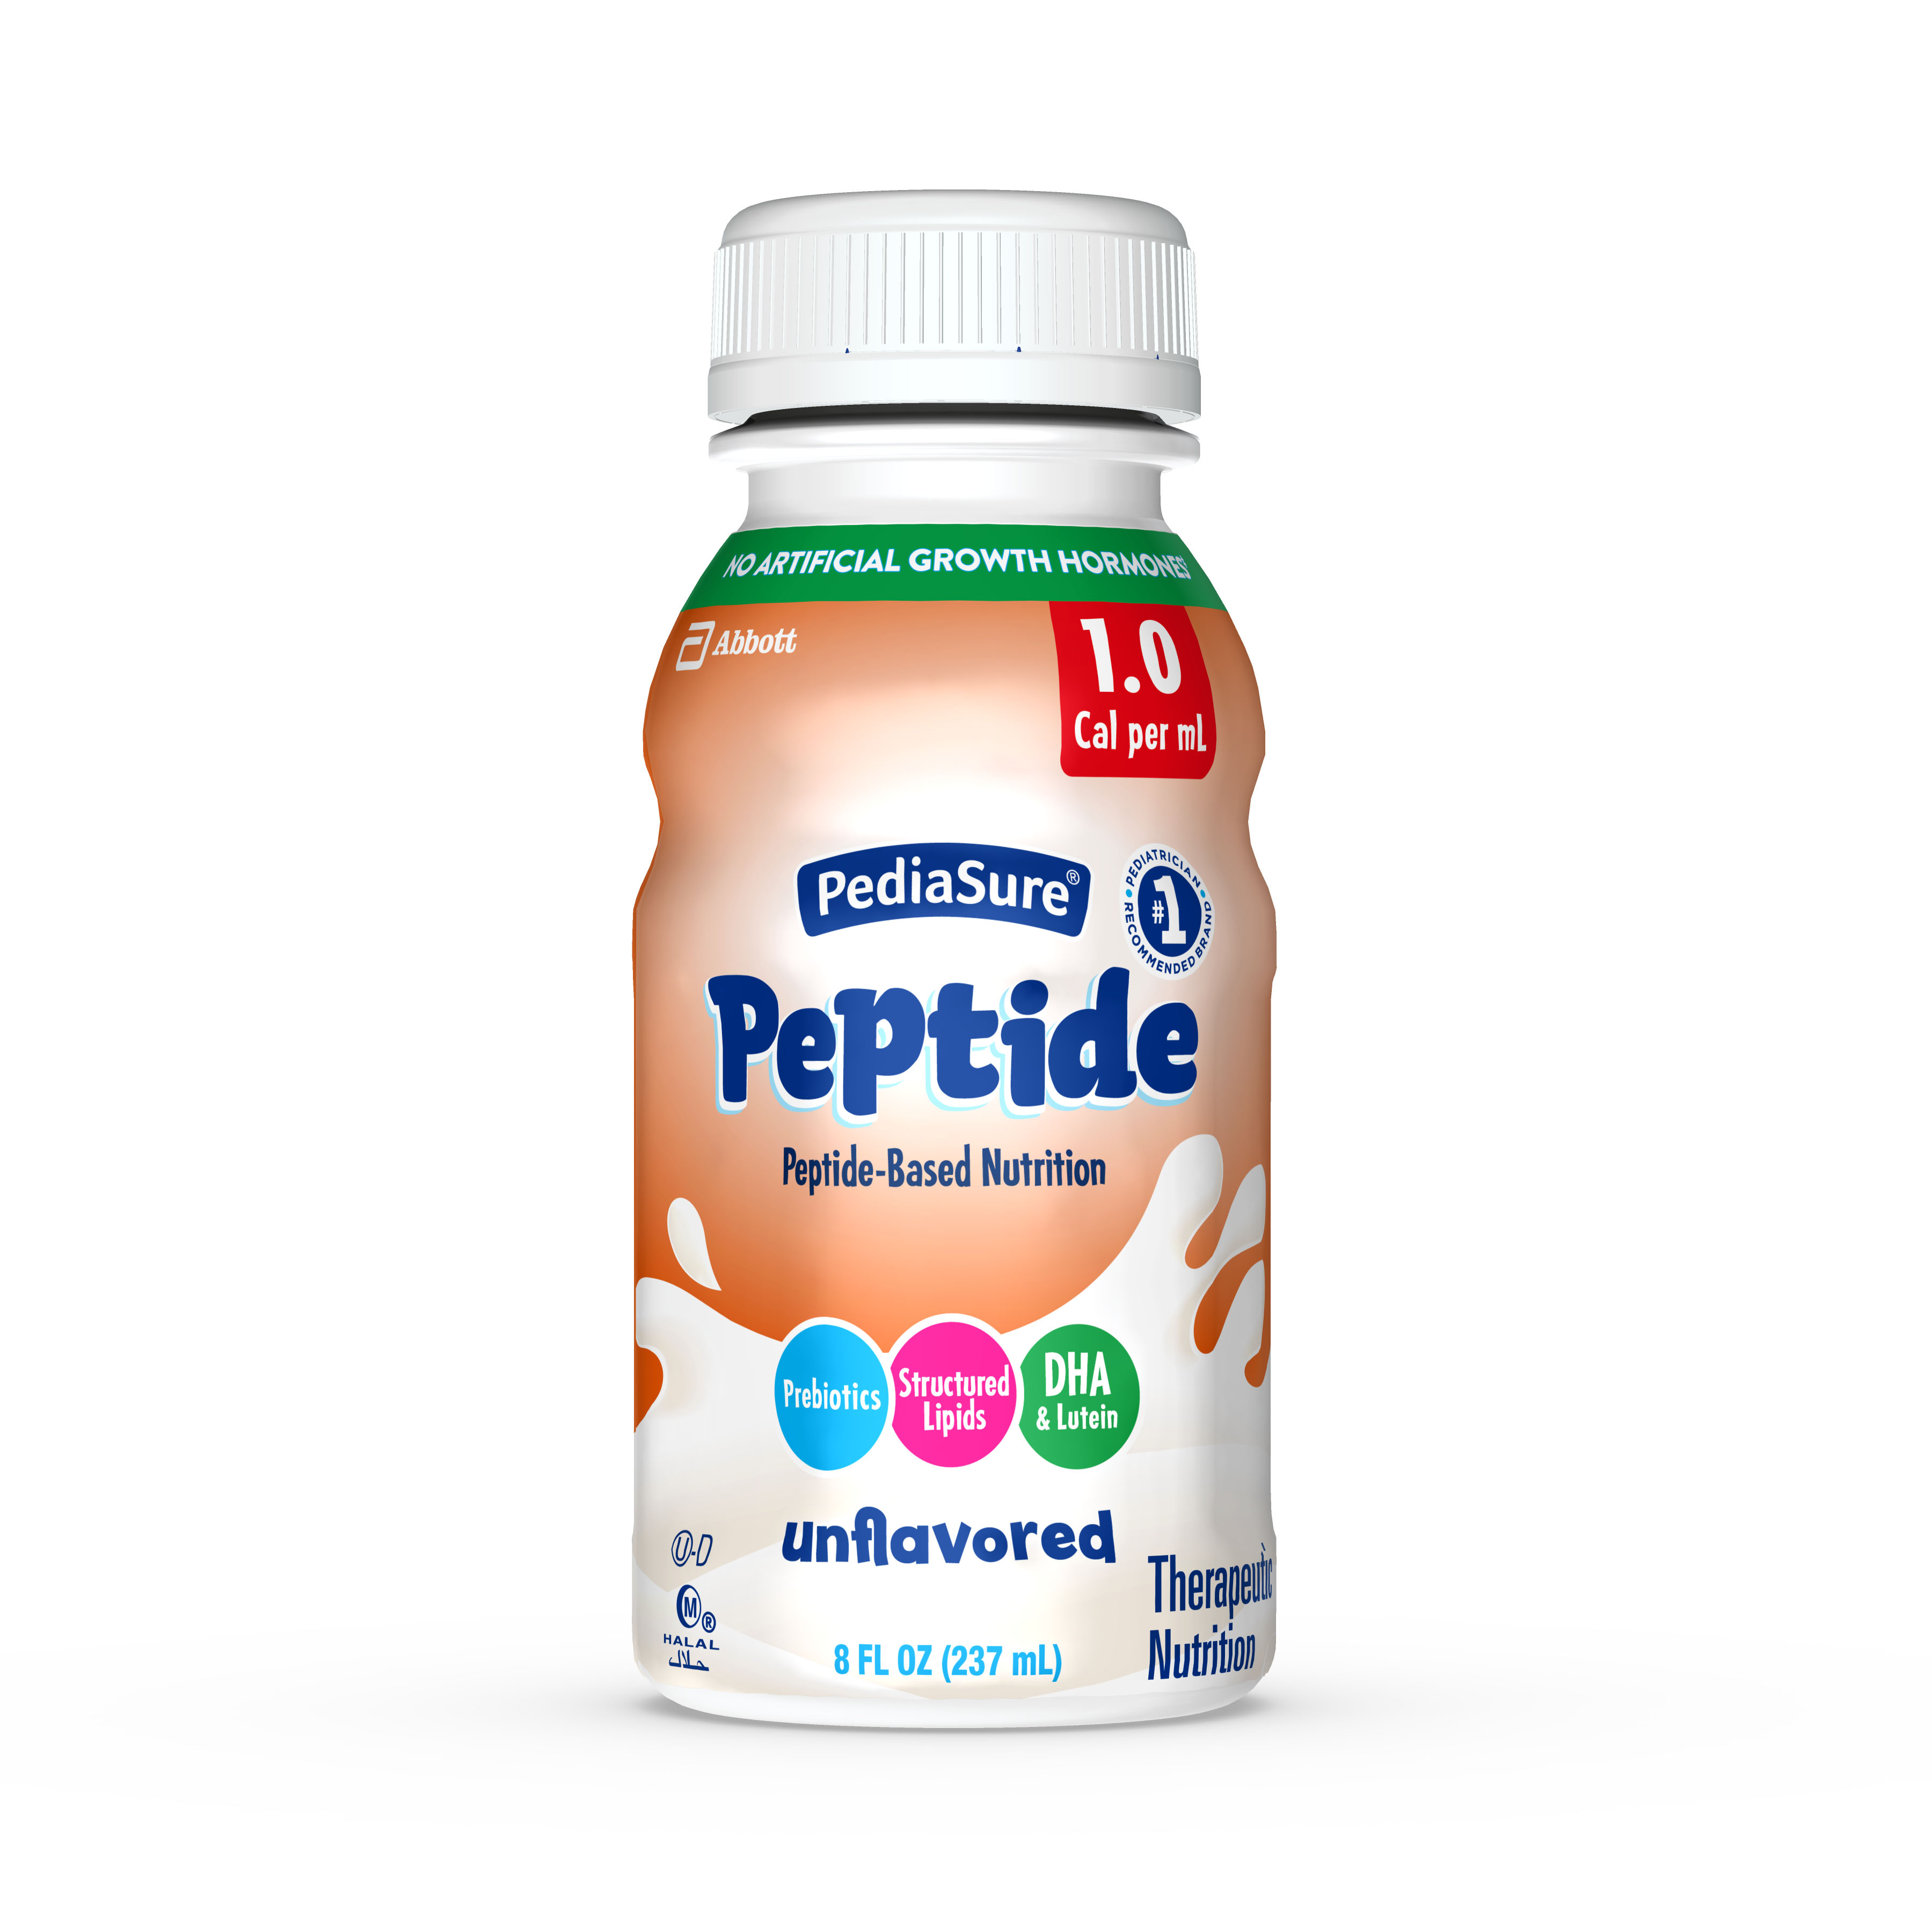 PediaSure® Unflavor Peptide 1.0 Cal